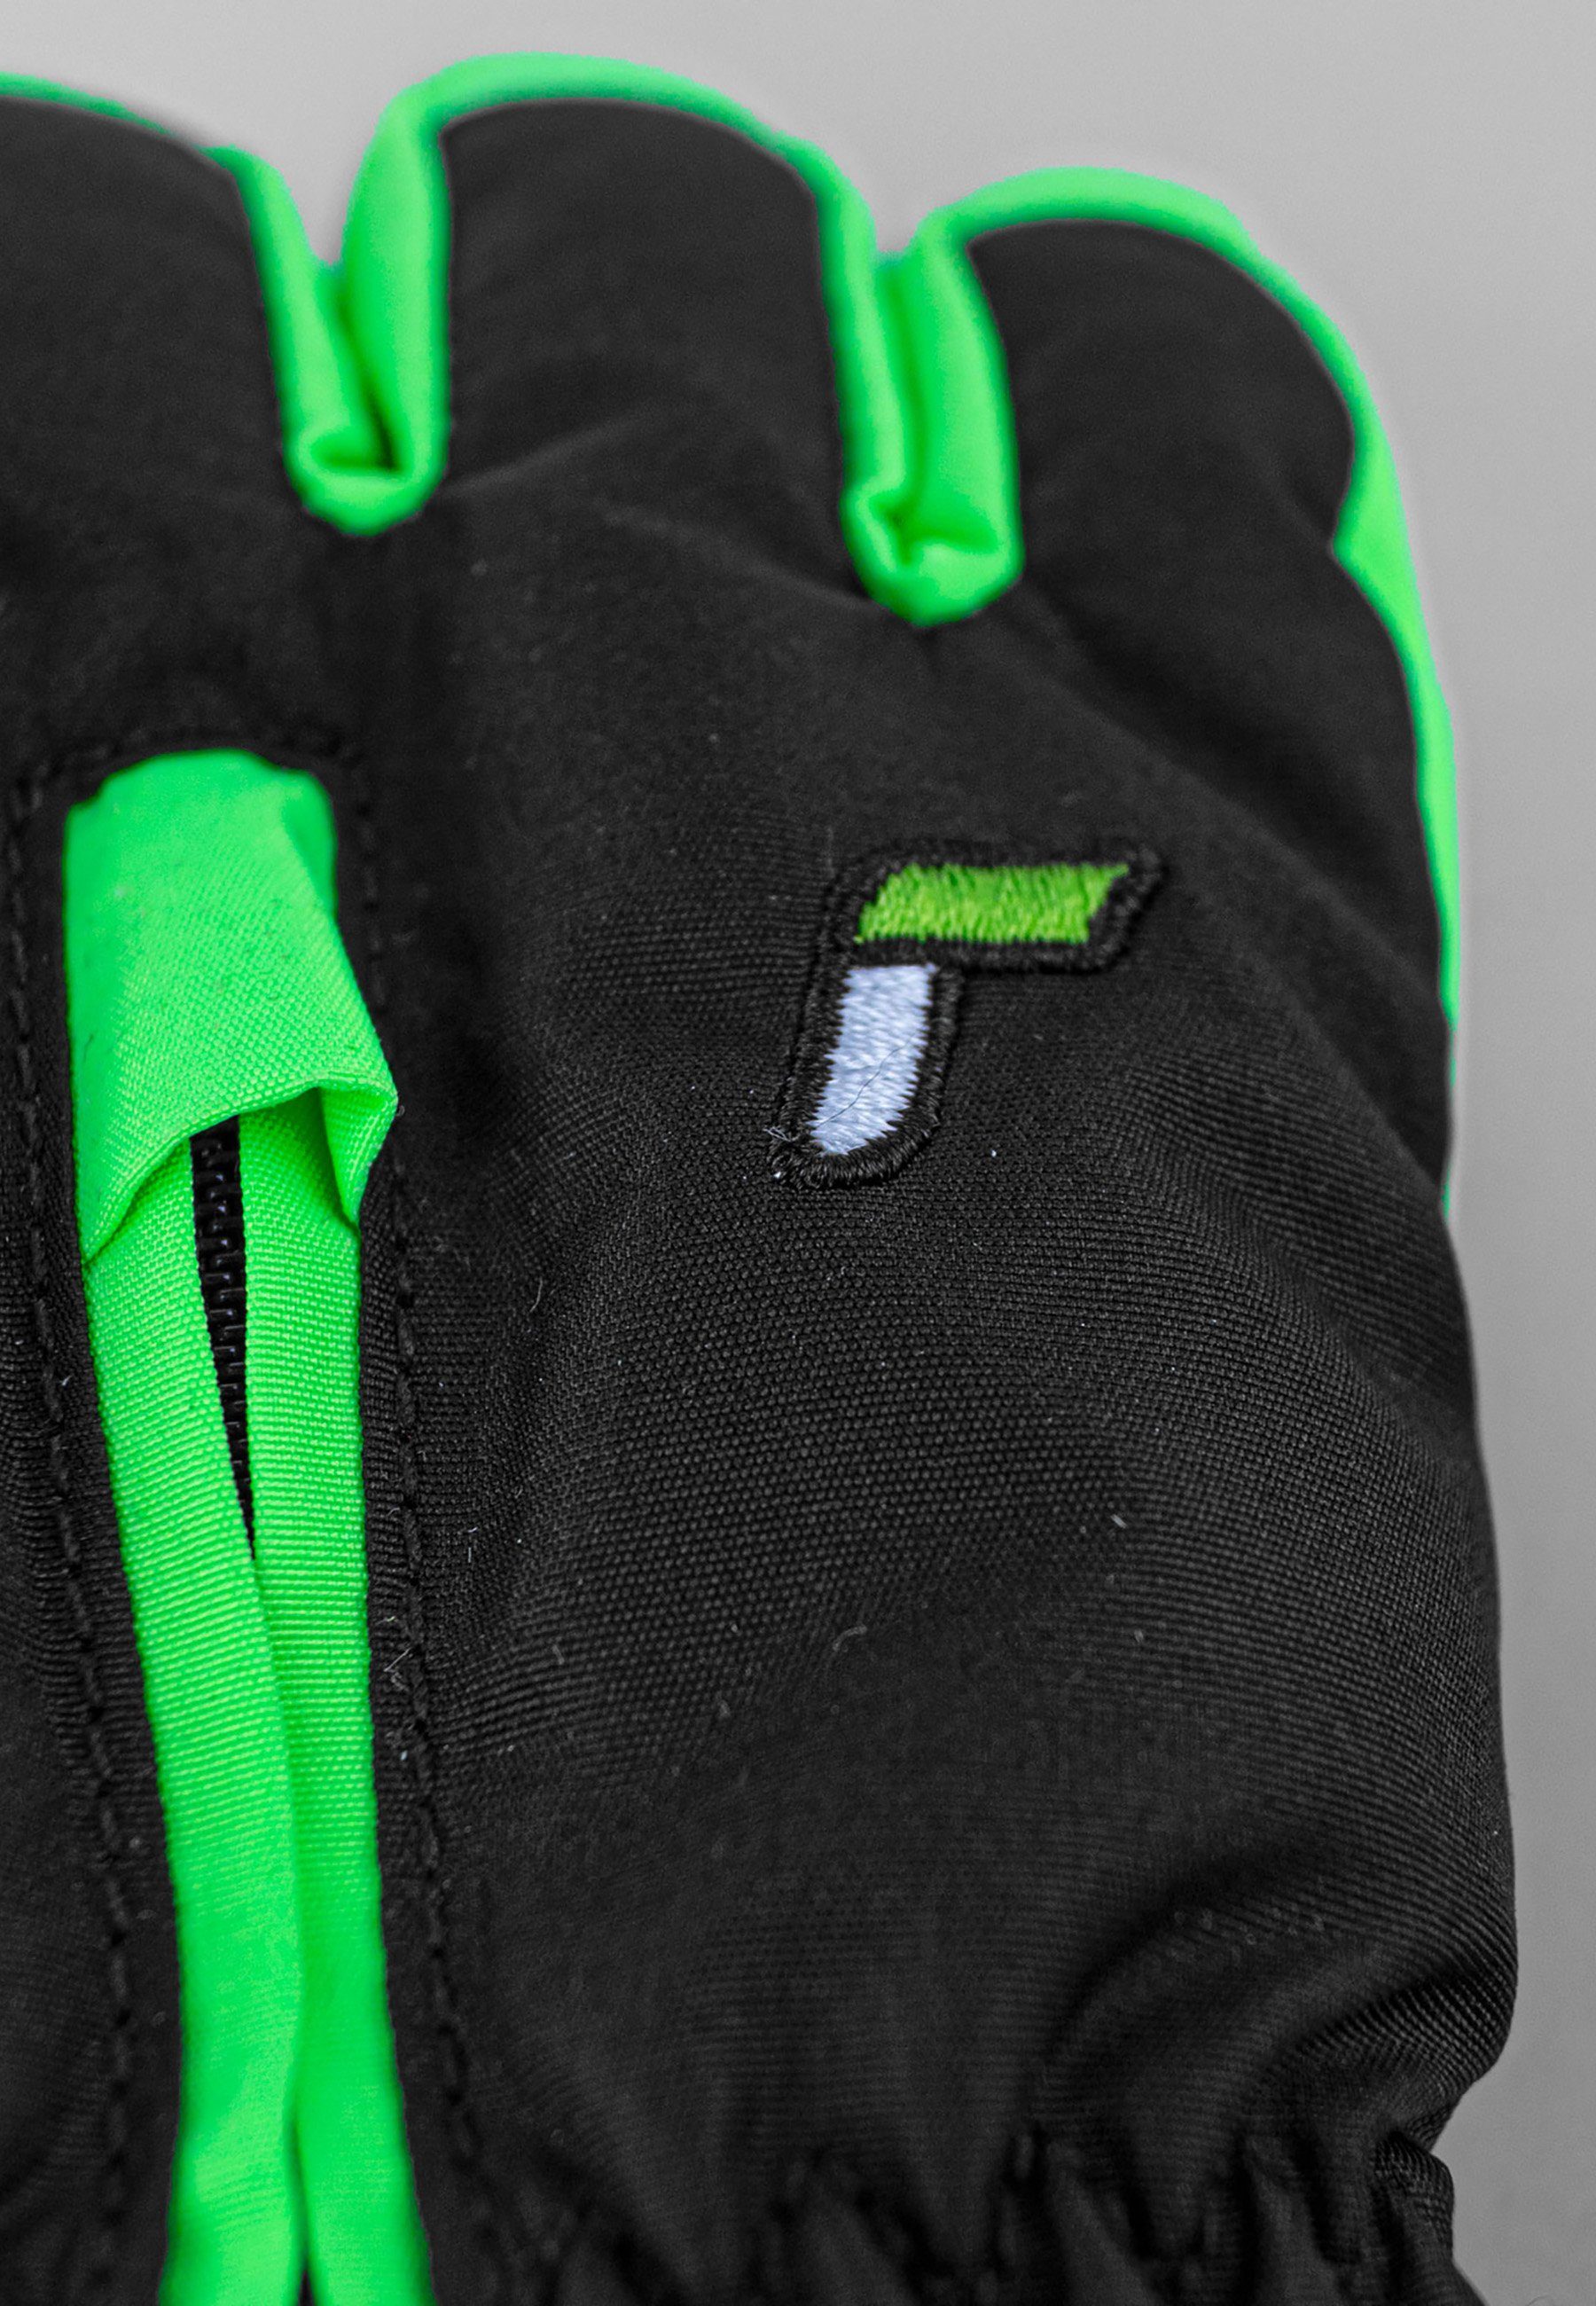 Reusch Skihandschuhe Ben mit grün-schwarz Handgelenkschlaufe praktischer